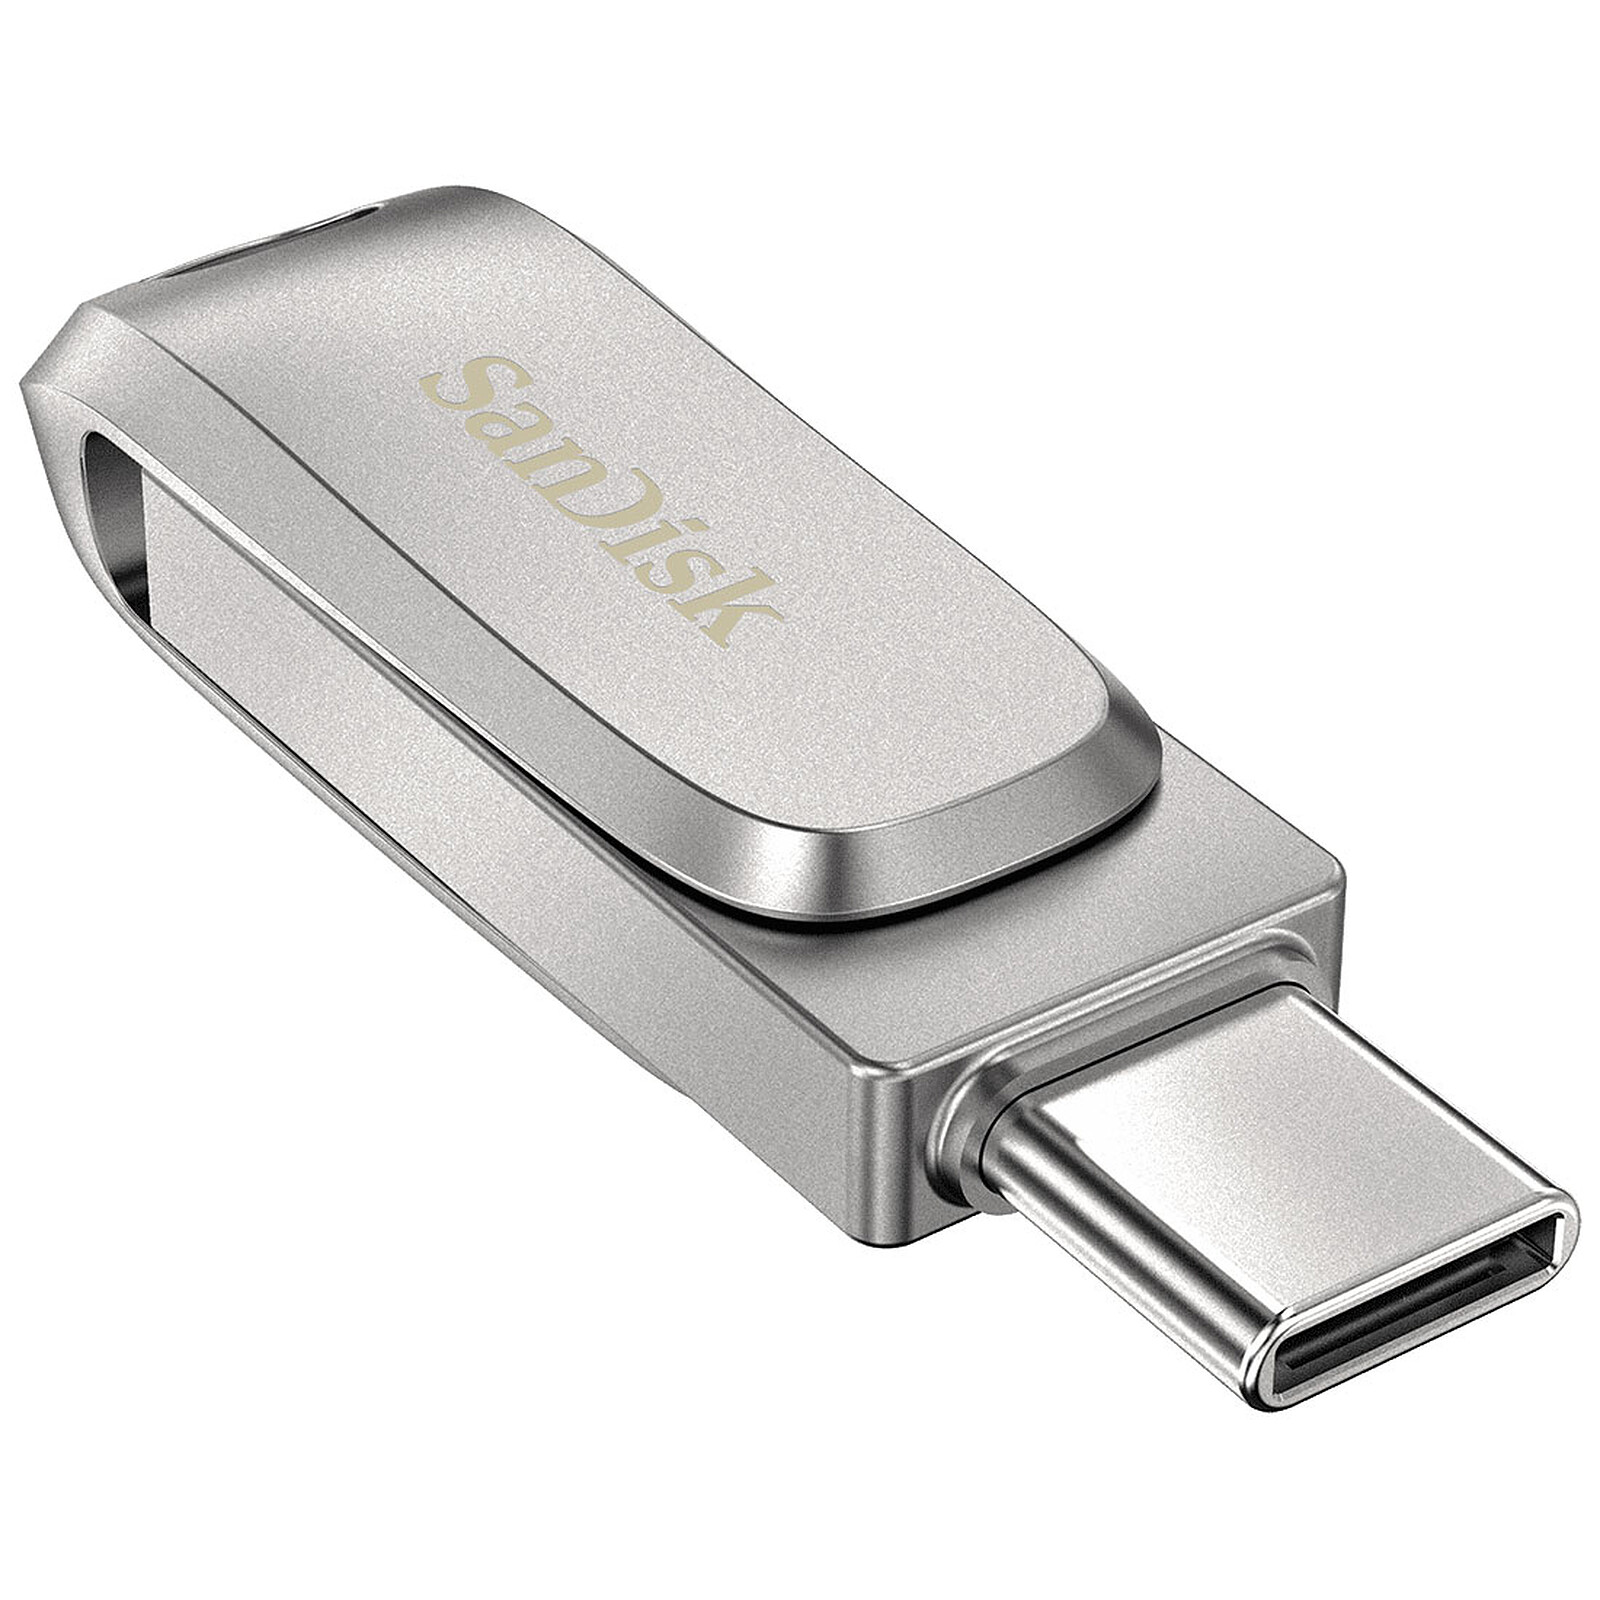 SanDisk Ultra Luxe 64 Go - Clé USB - LDLC